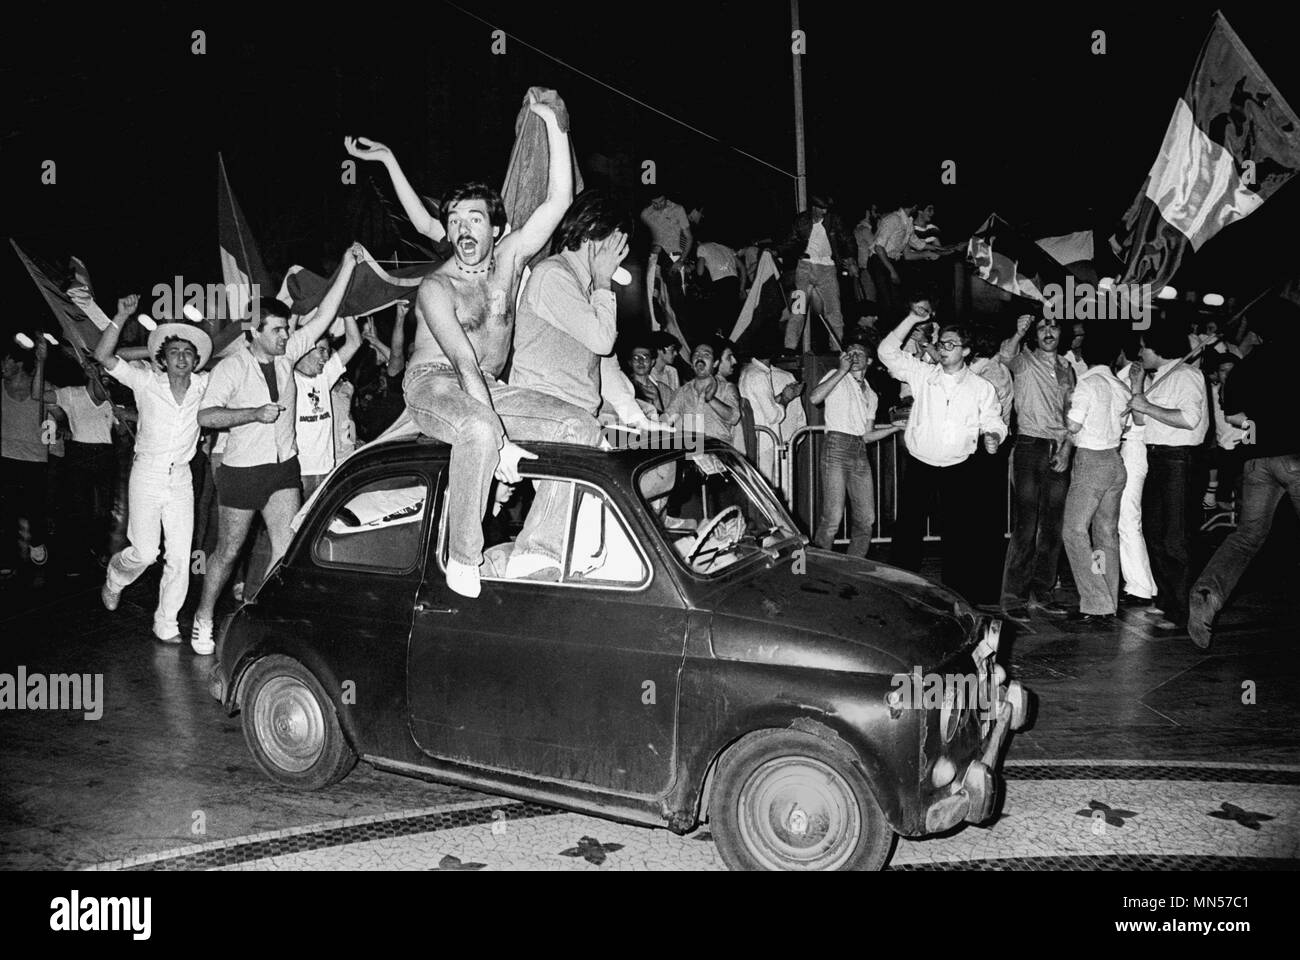 Mailand (Italien), Unterstützern feiern einen Sieg der italienischen Fußball-Nationalmannschaft während der Weltmeisterschaft 1978 Stockfoto